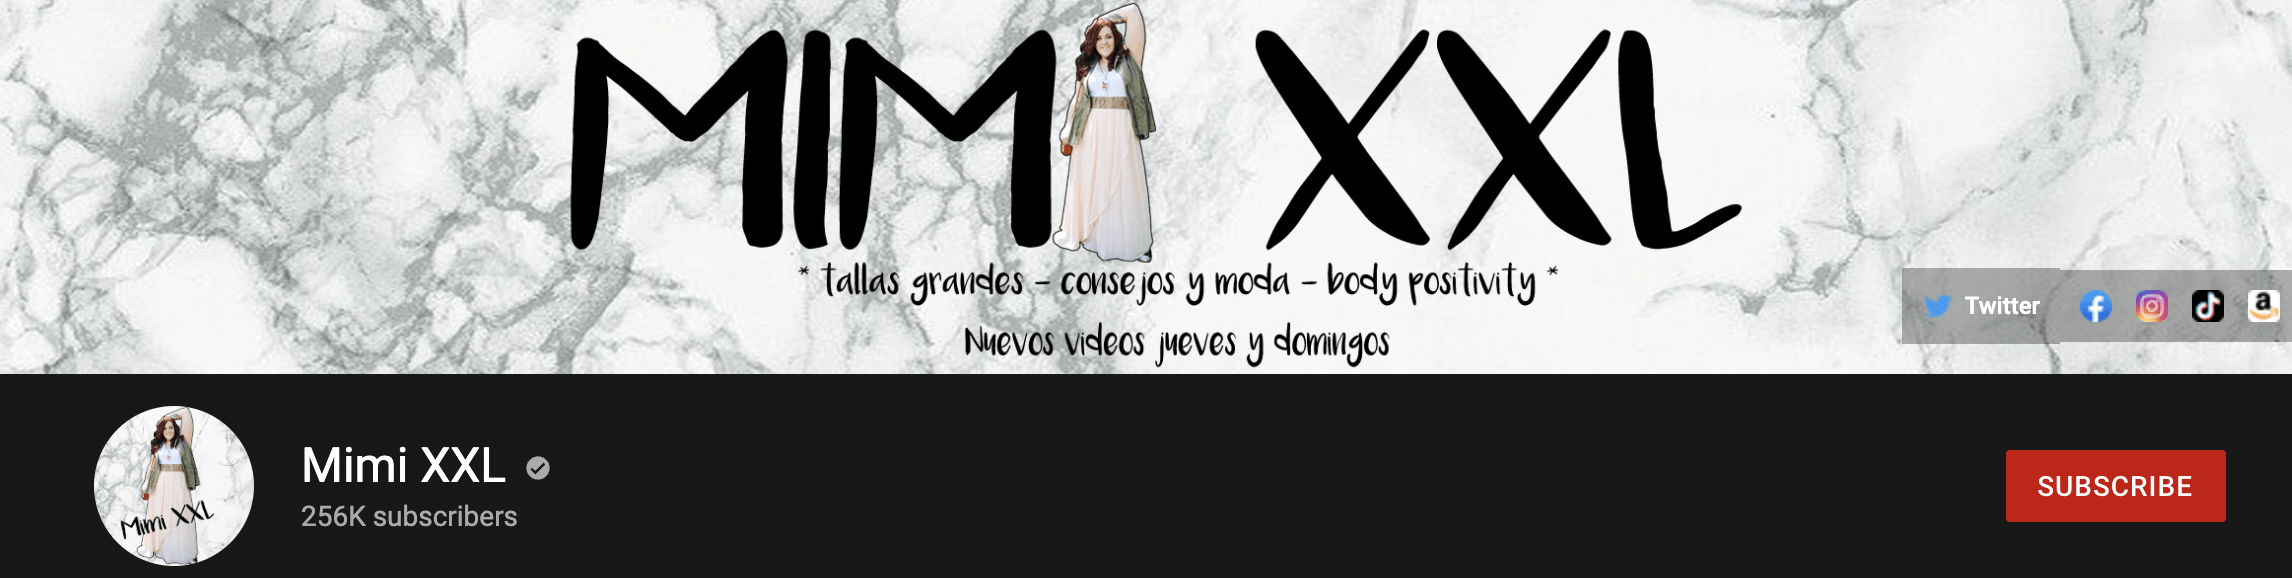 Mimi XXL Youtube Channel